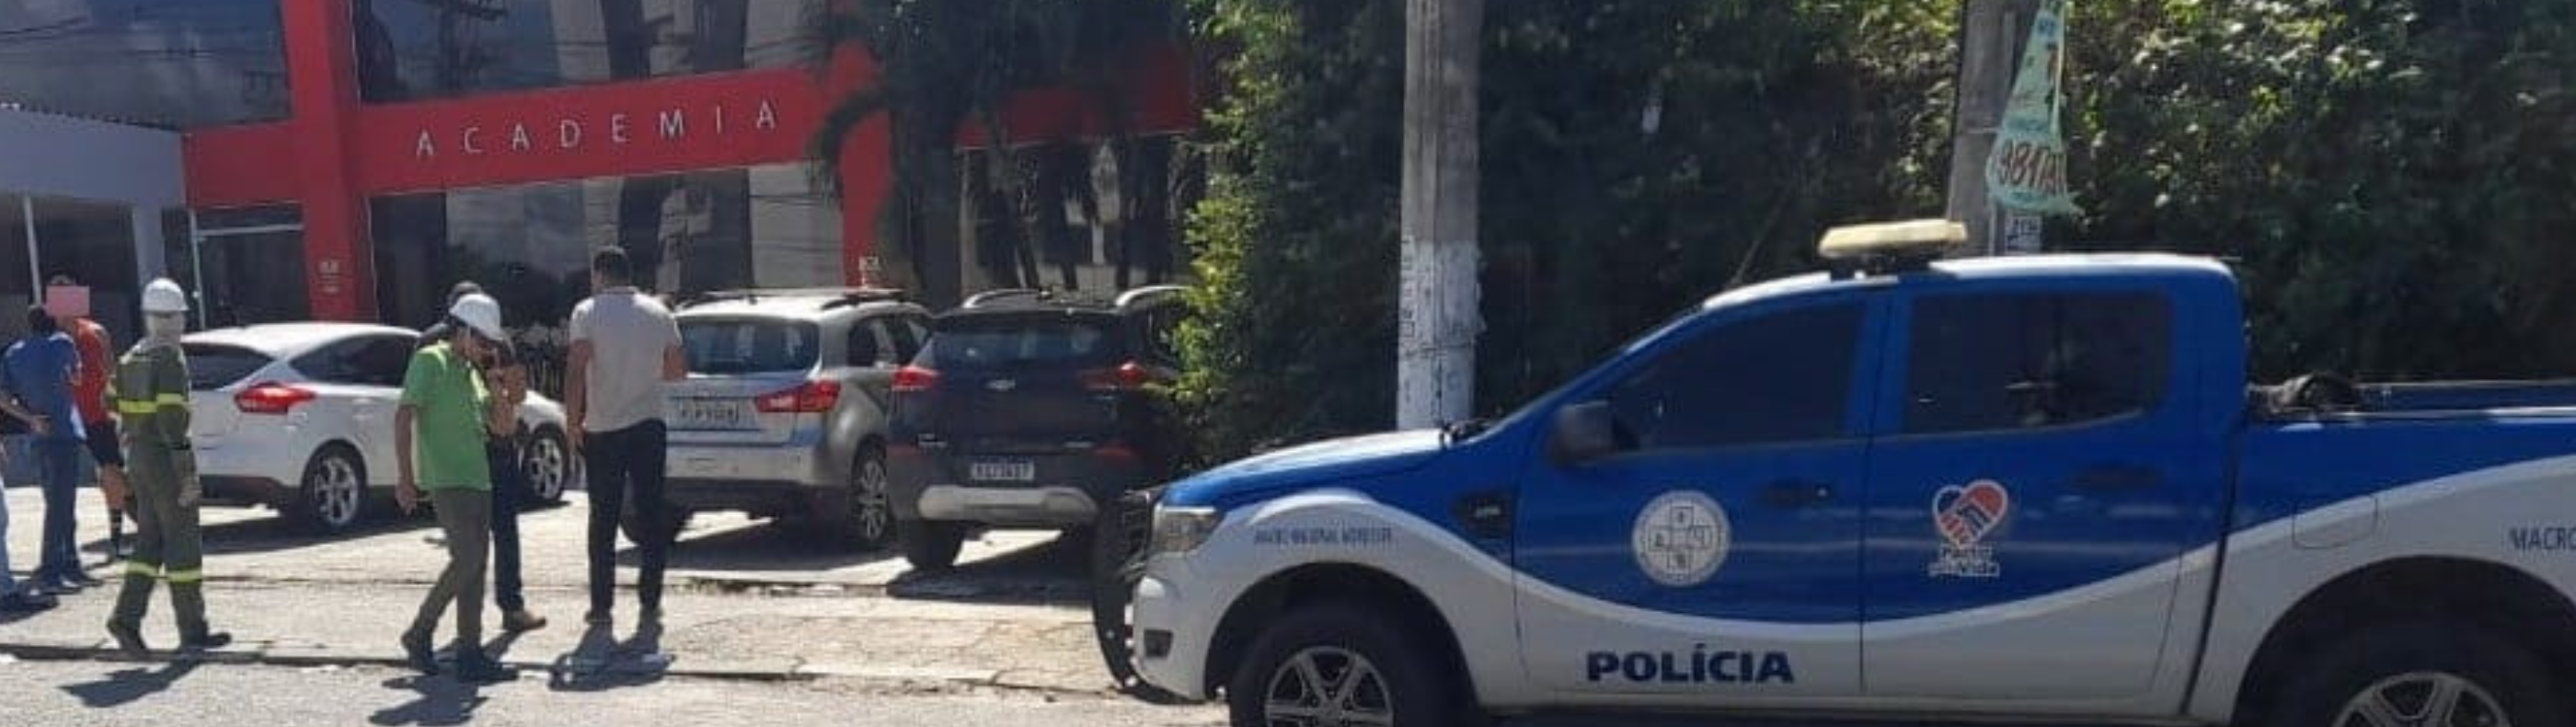 Neoenergia Coelba e Polícia Civil flagram furto de energia em academia de alto padrão em Lauro de Freitas